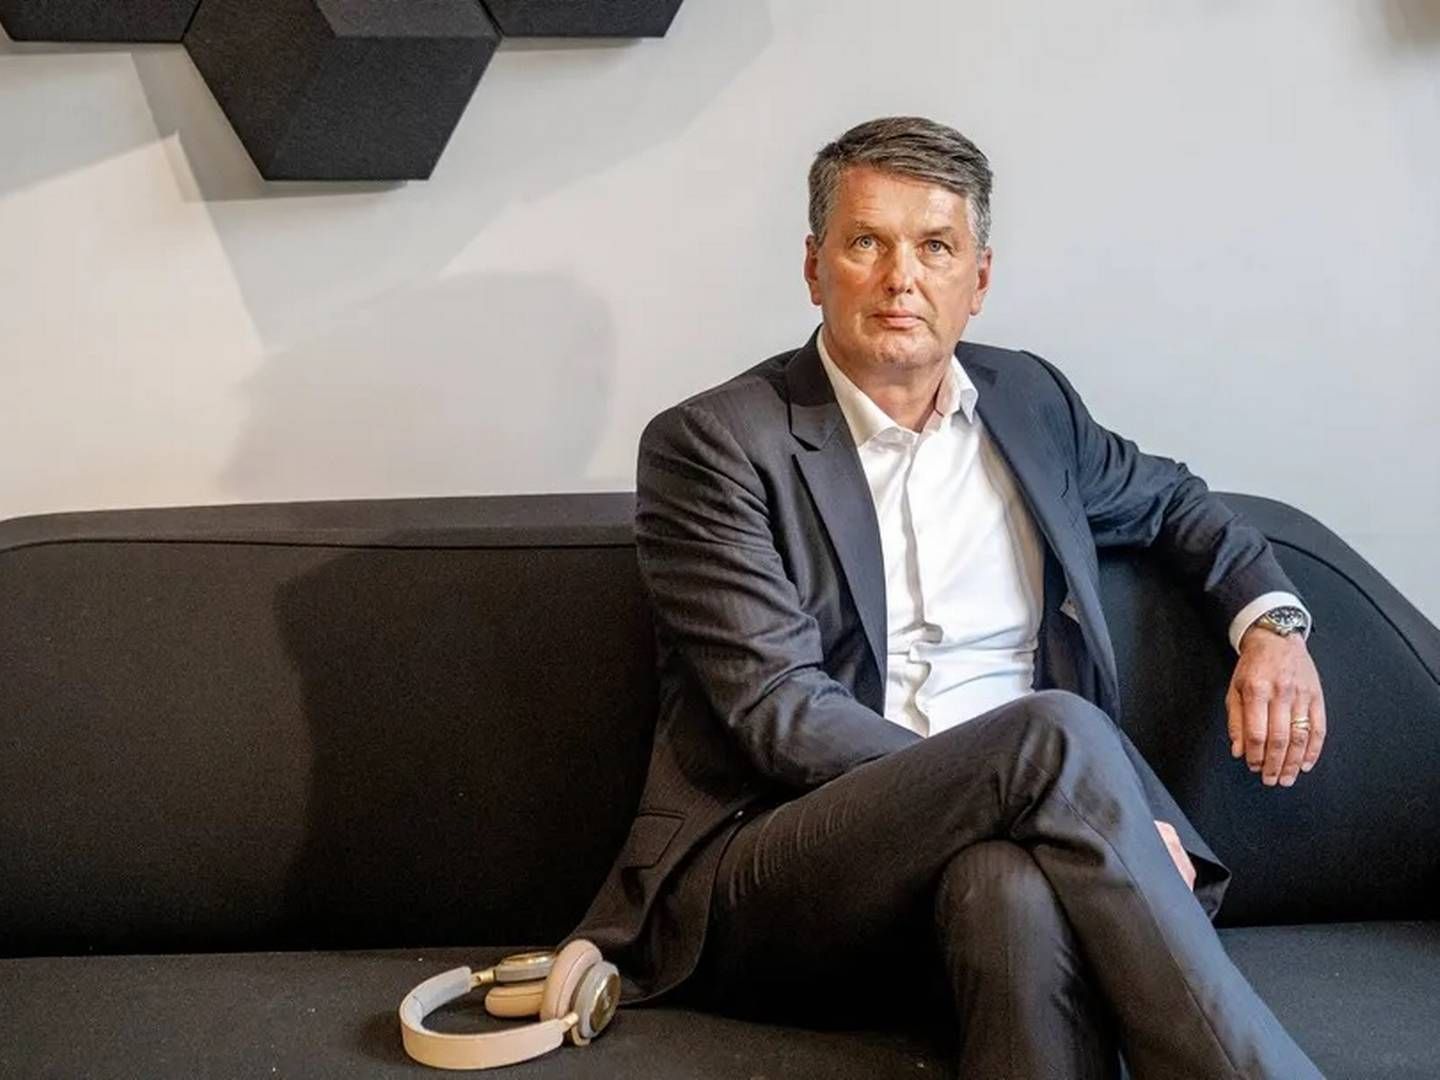 Svenske Kristian Teär har været adm. direktør hos Bang & Olufsen siden 2019. | Foto: Stine Bidstrup